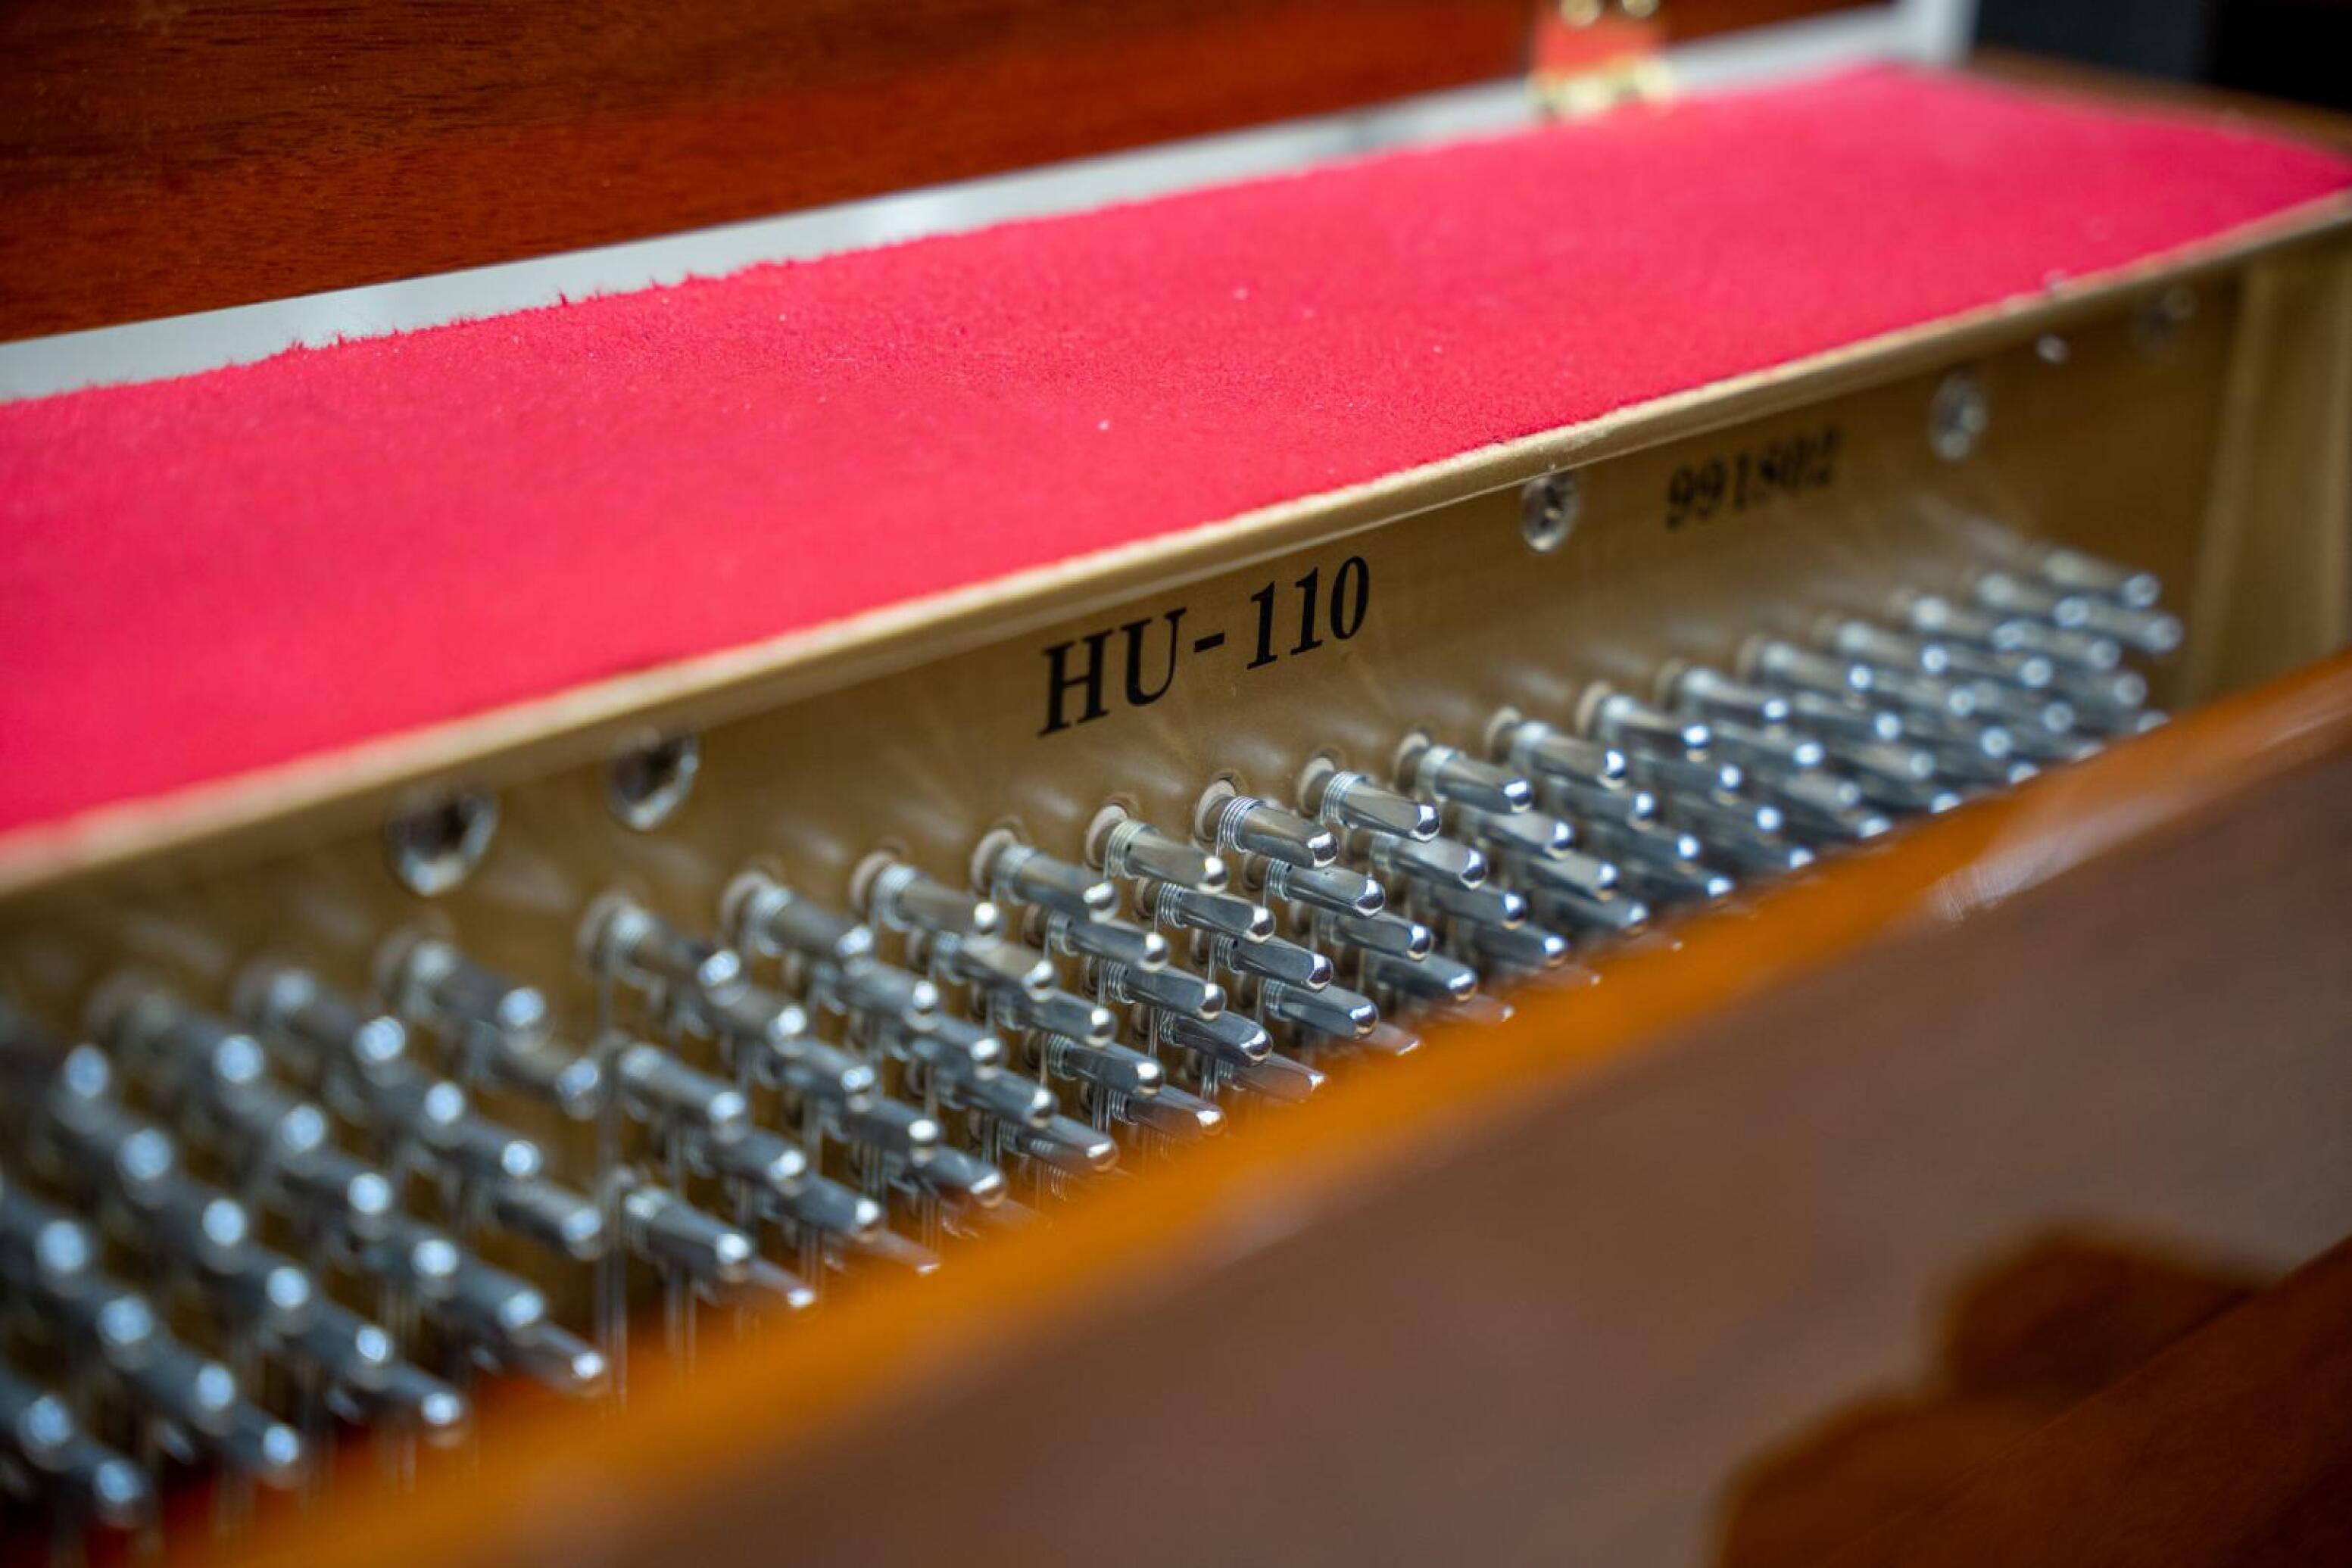  پیانو آکوستیک دیواری چلوریس HU-110 